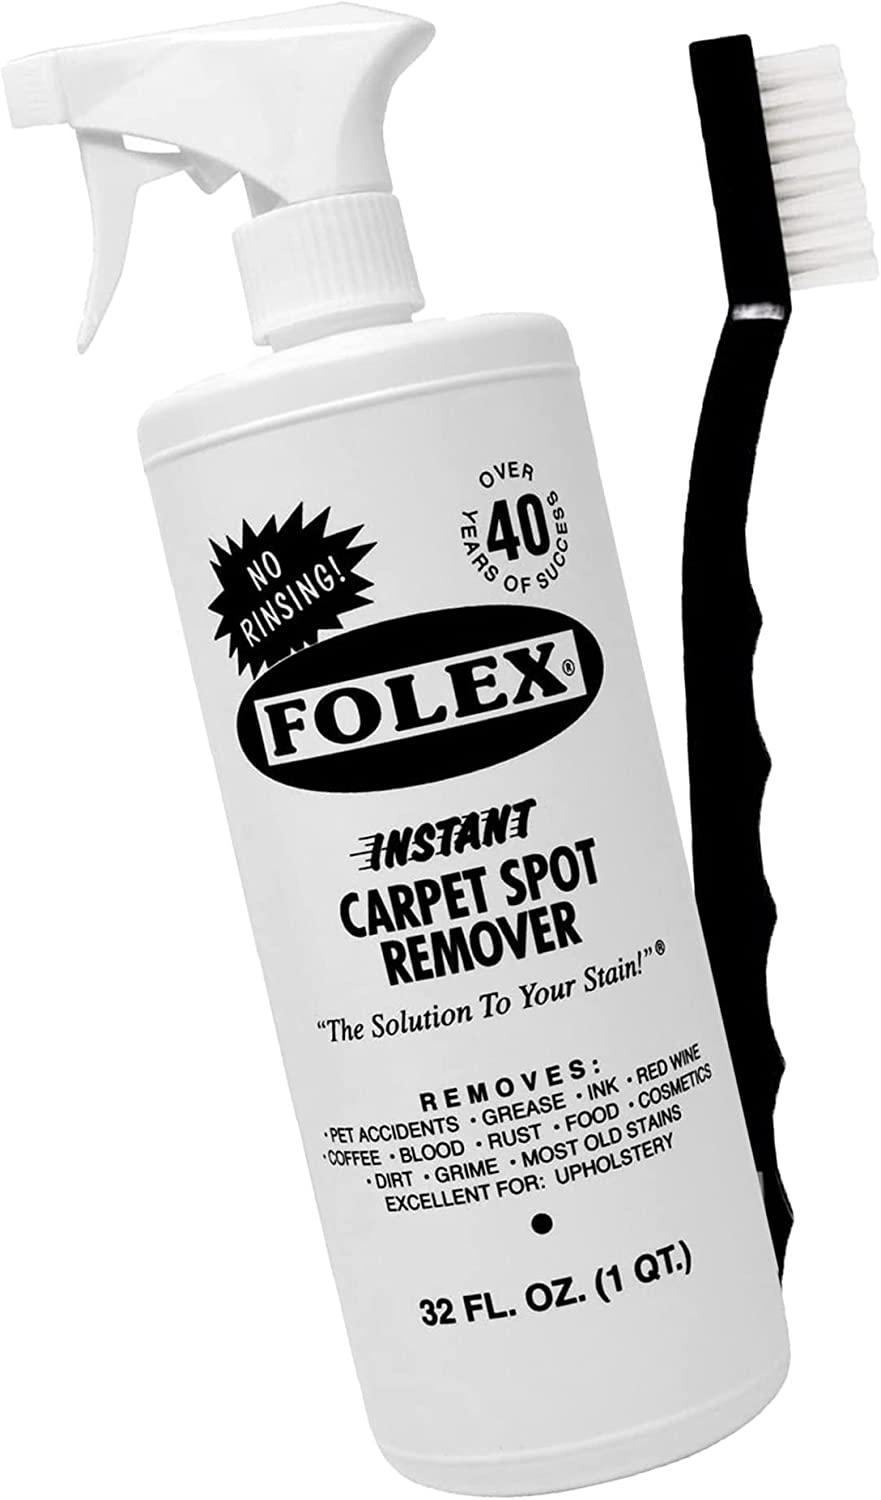 Folex Instant Carpet Spot Remover Review